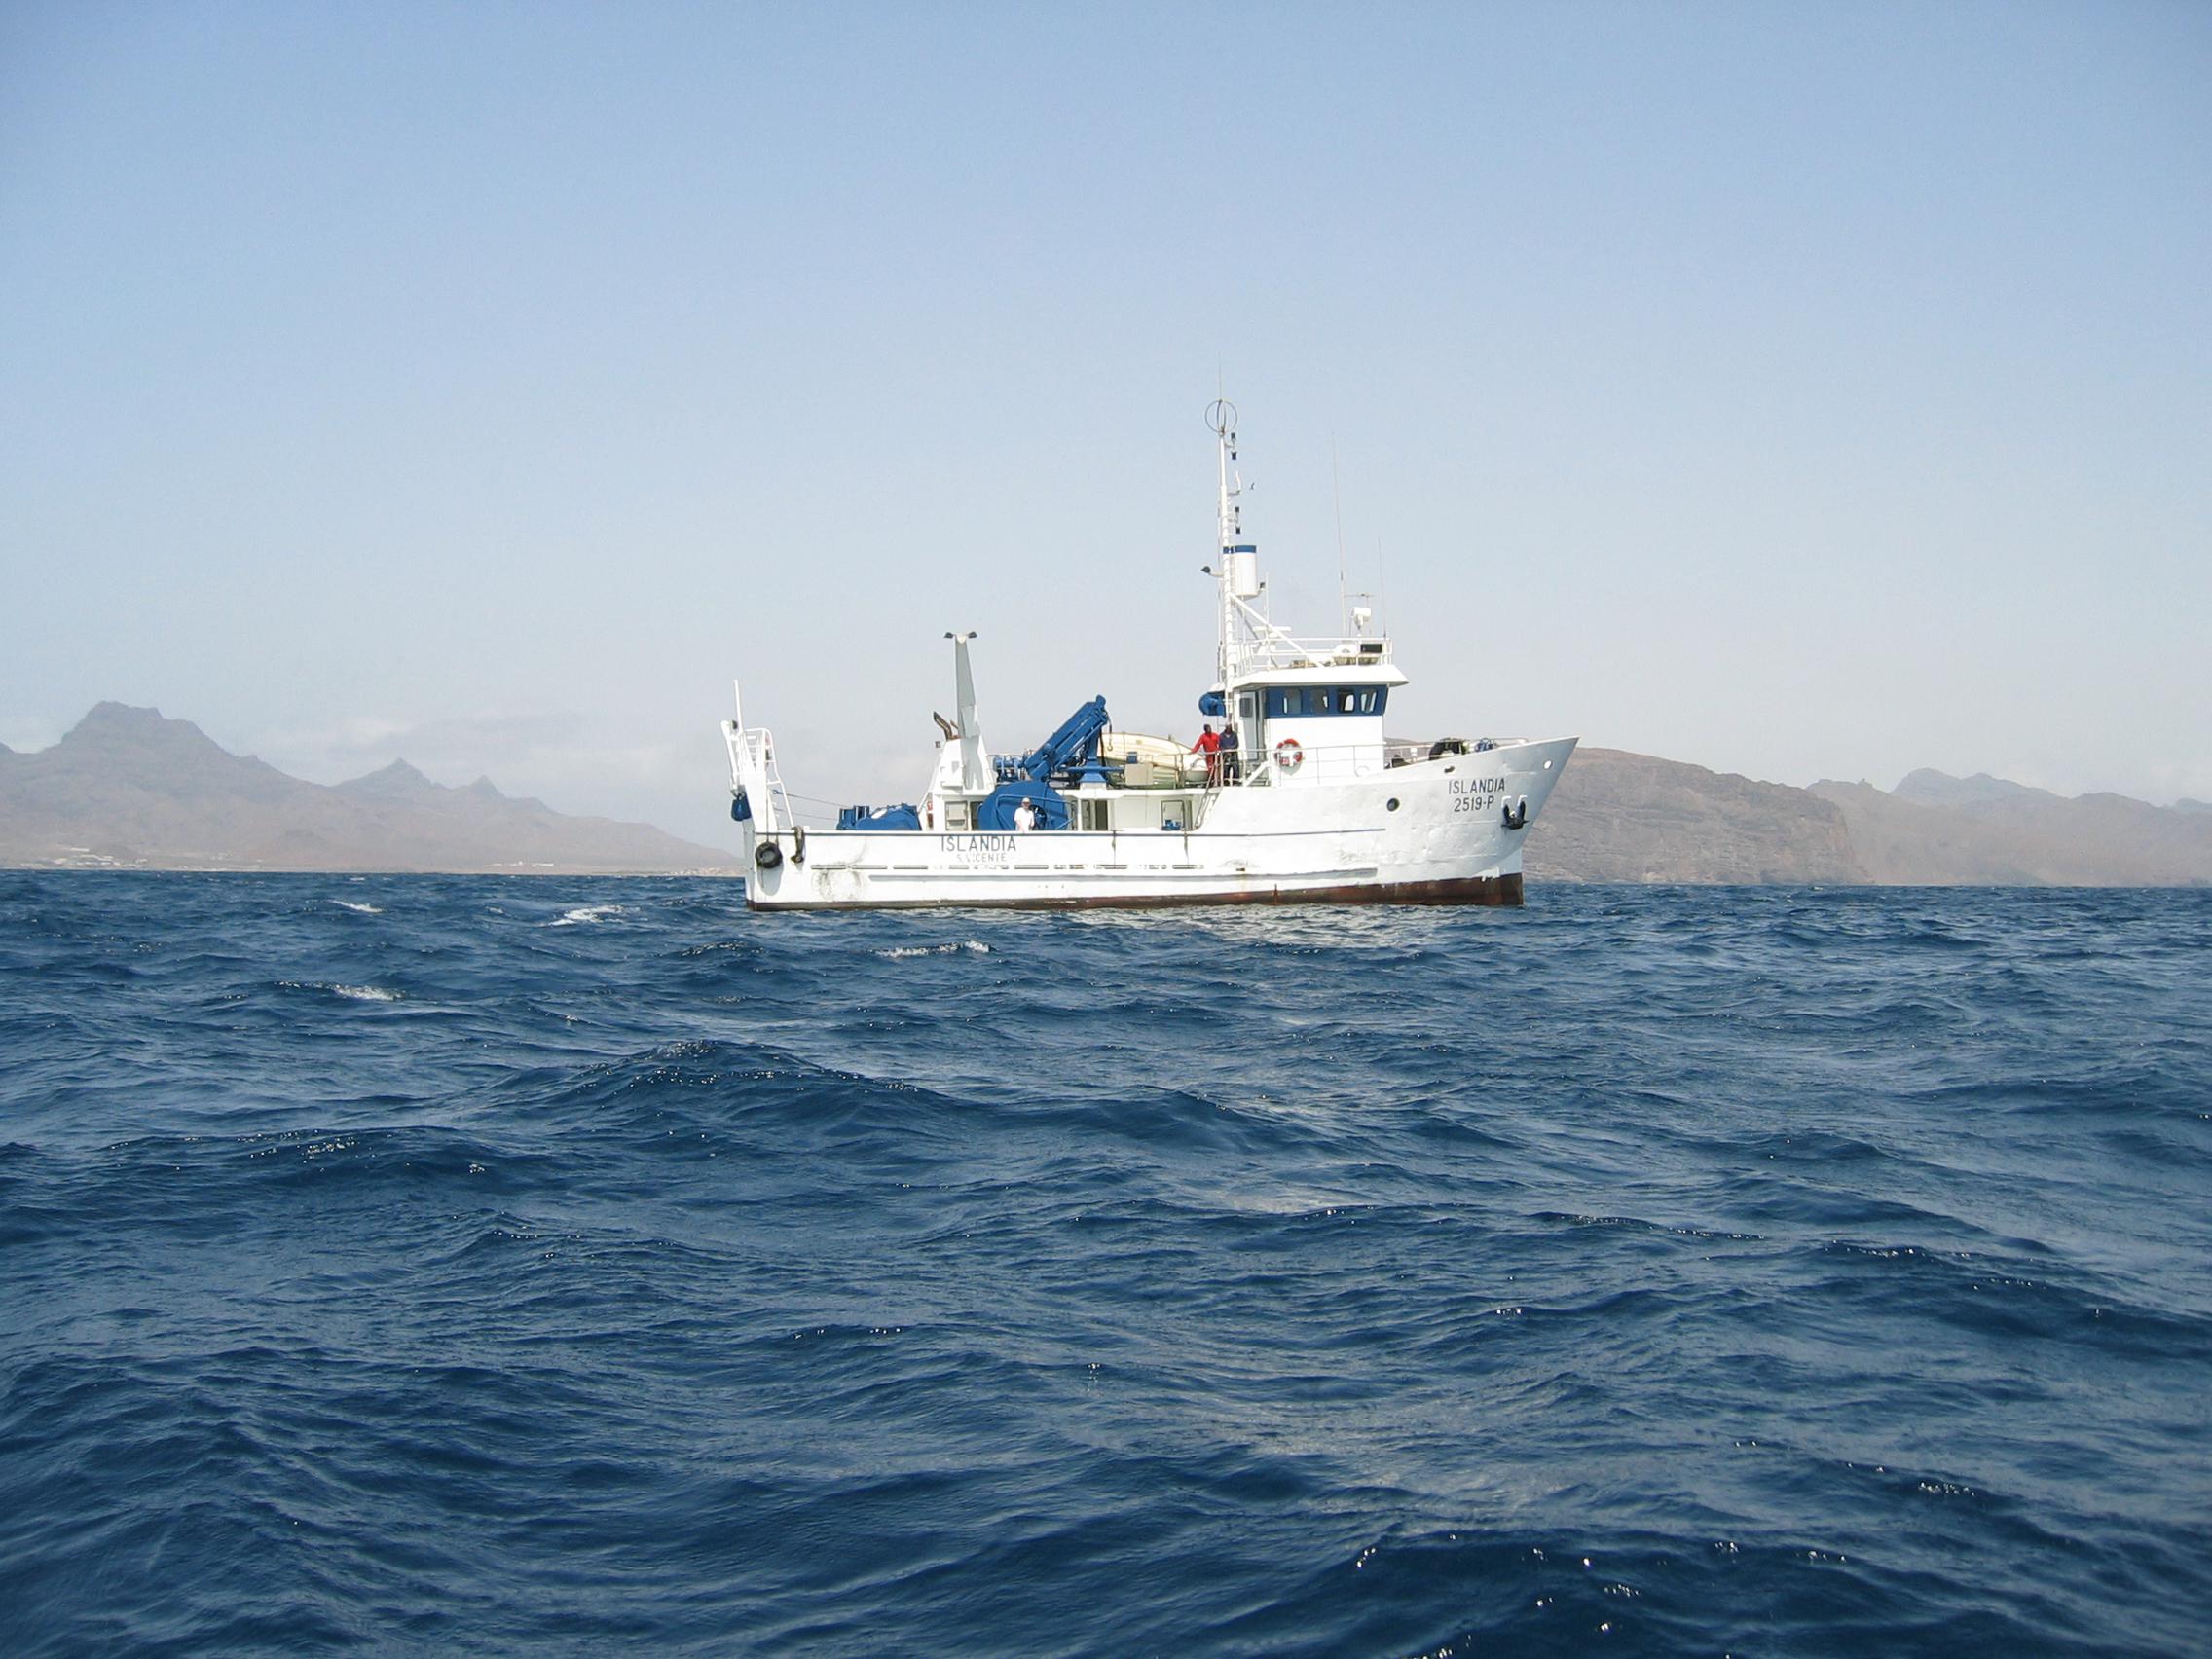 Mit dem Forschungsschiff ISLANDIA des kapverdischen Instituto Nacional de Desenvolvimento das Pescas (INDP) konnte ein sauerstoffarmer Wirbel direkt beprobt werden. (Foto: B. Fiedler, GEOMAR)